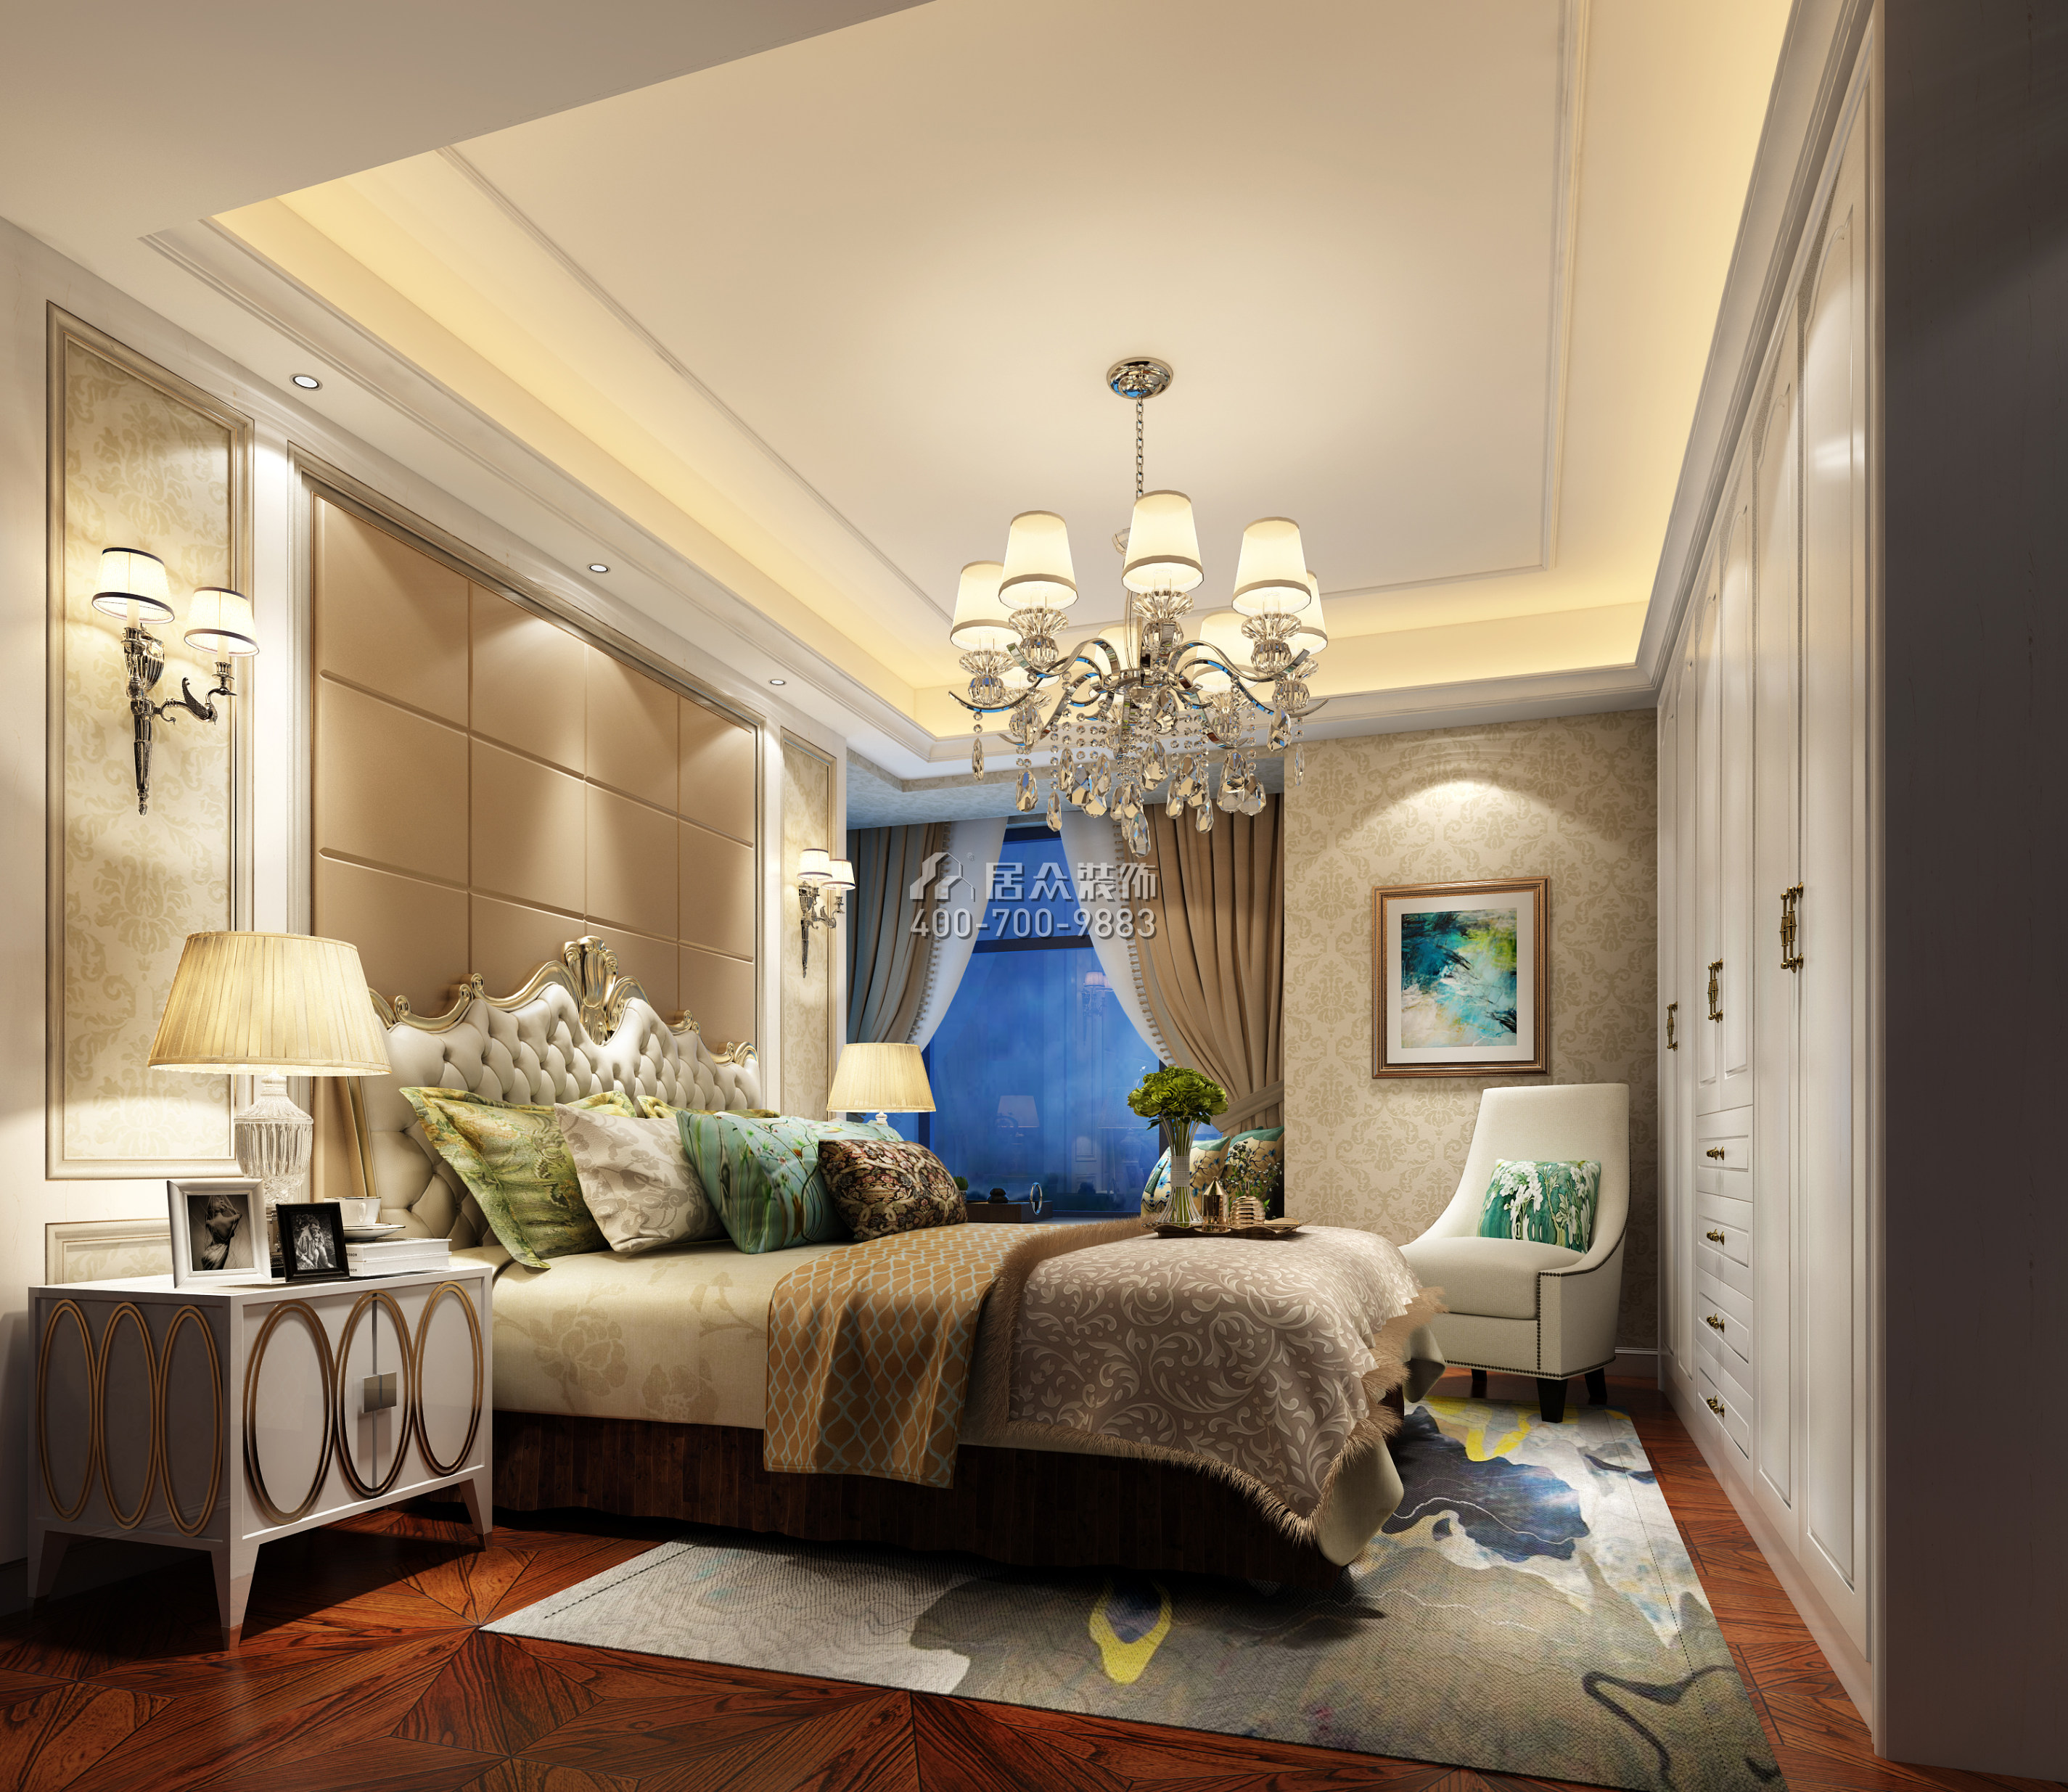 发展兴苑110平方米欧式风格平层户型卧室装修效果图